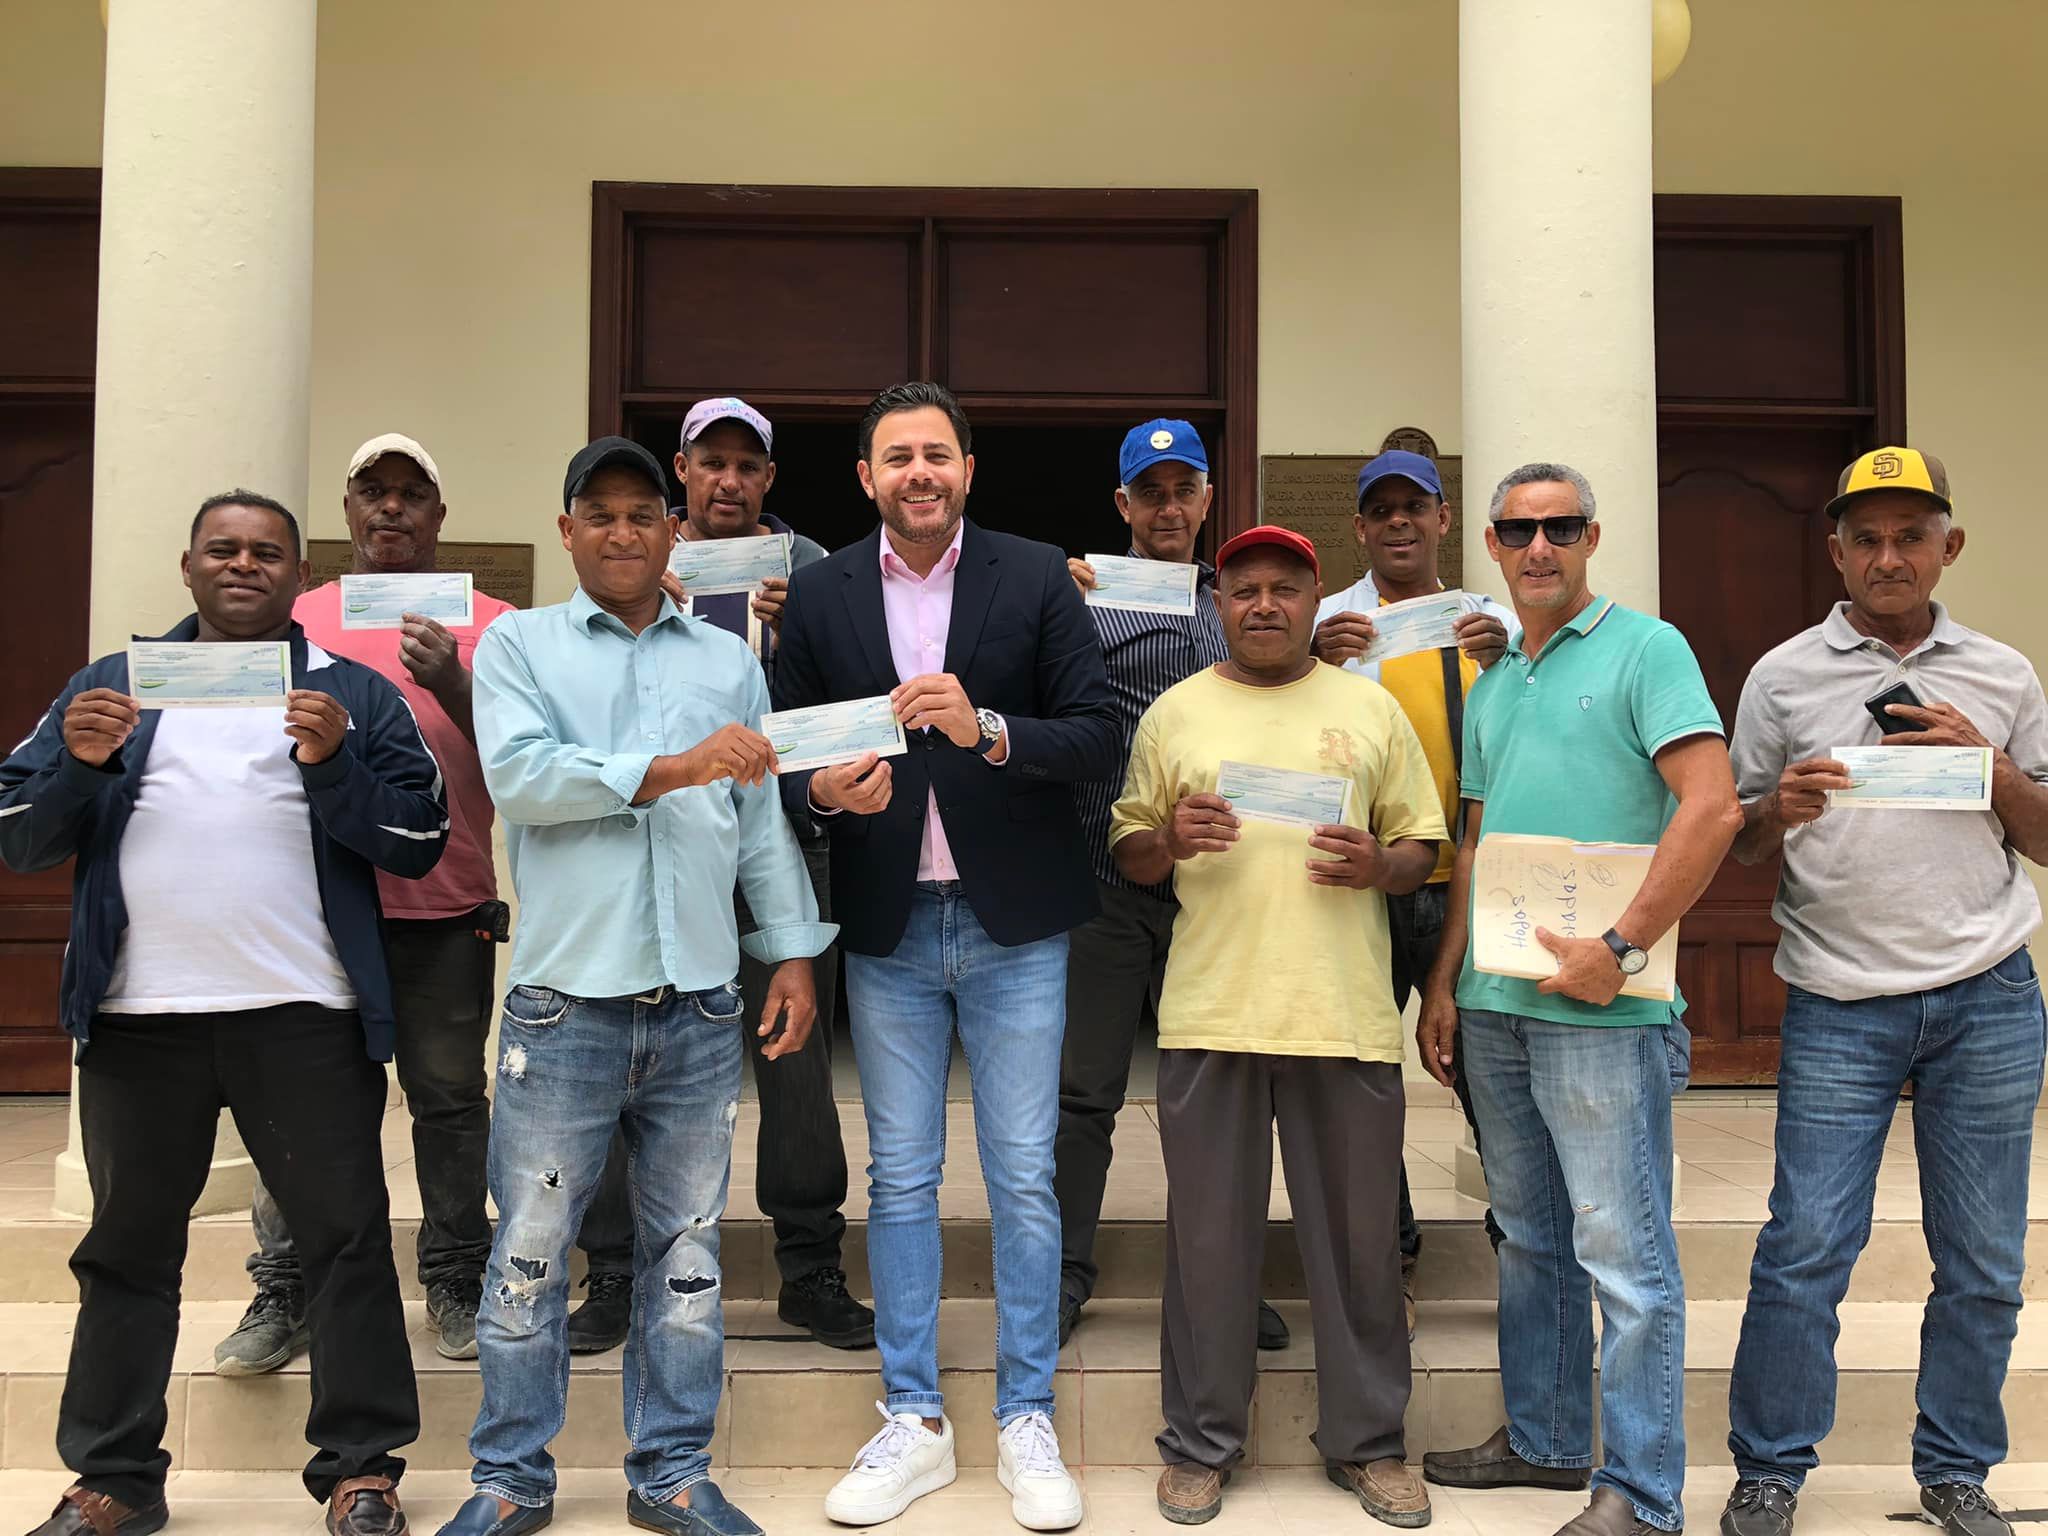 La alcaldía de San José de Ocoa entregó en el día de hoy el 20% equivalente a RD$ 1,050,000.00 pesos a varios maestros constructores